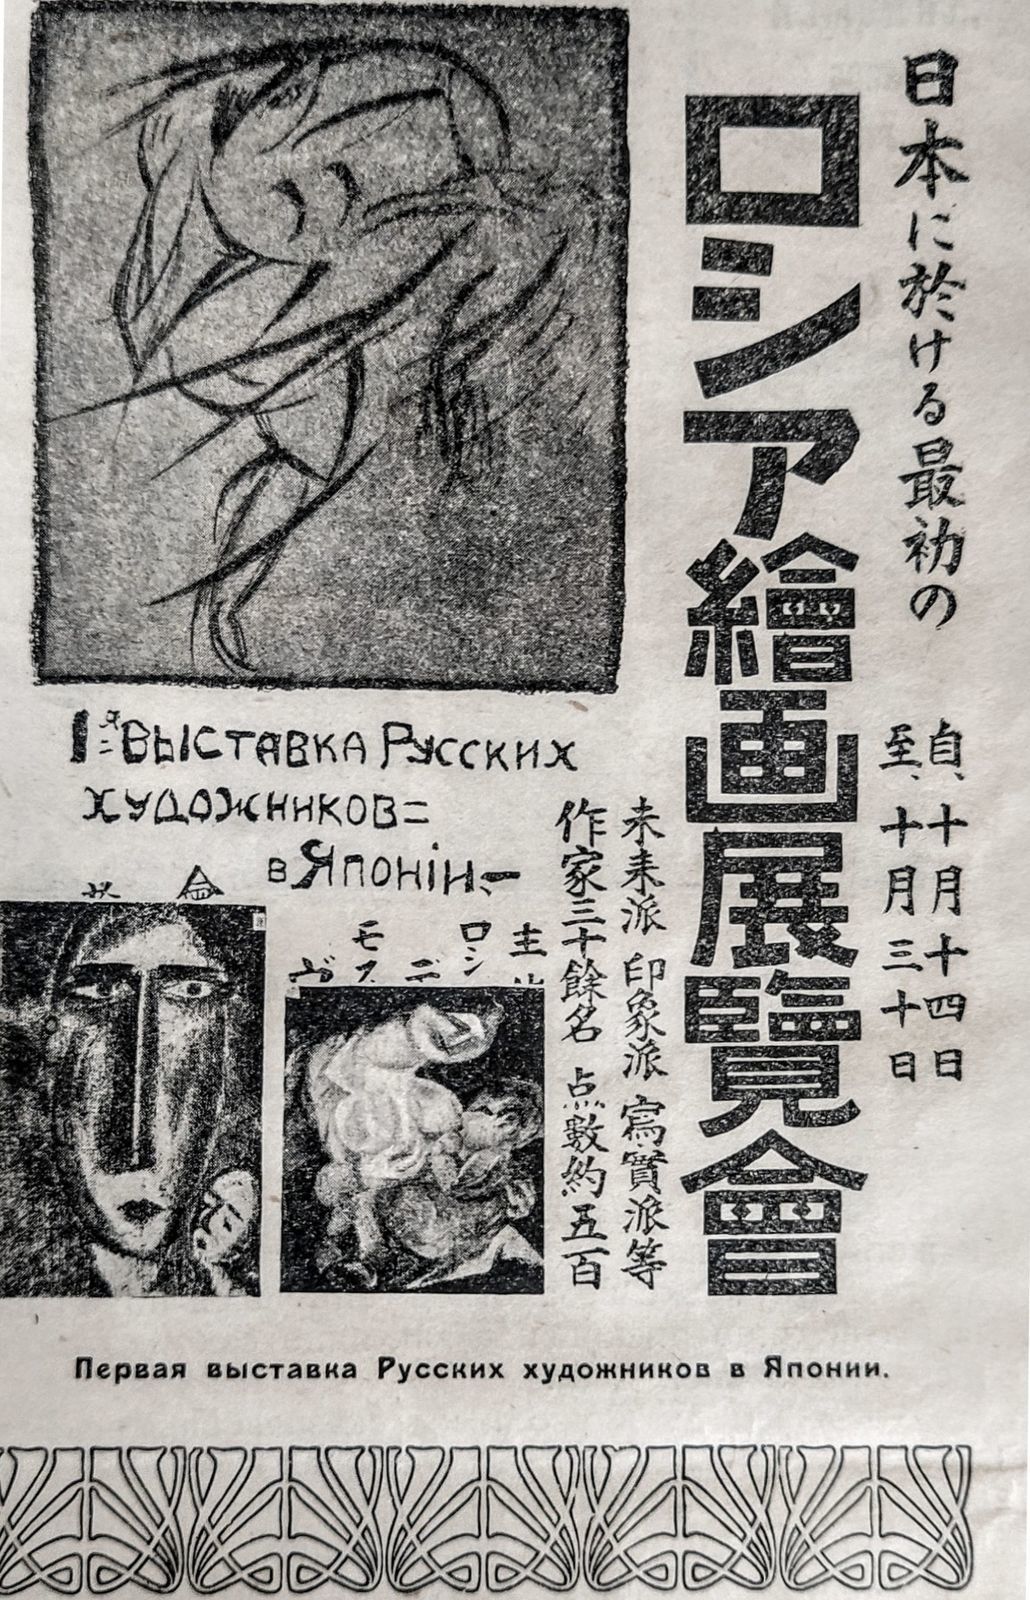 Плакат 1-й Выставки русских художников в Японии. Токио, 1920. Изображение из журнала «Всемирная иллюстрация», выпуск V, 1922 Архив Виктора Белозерова